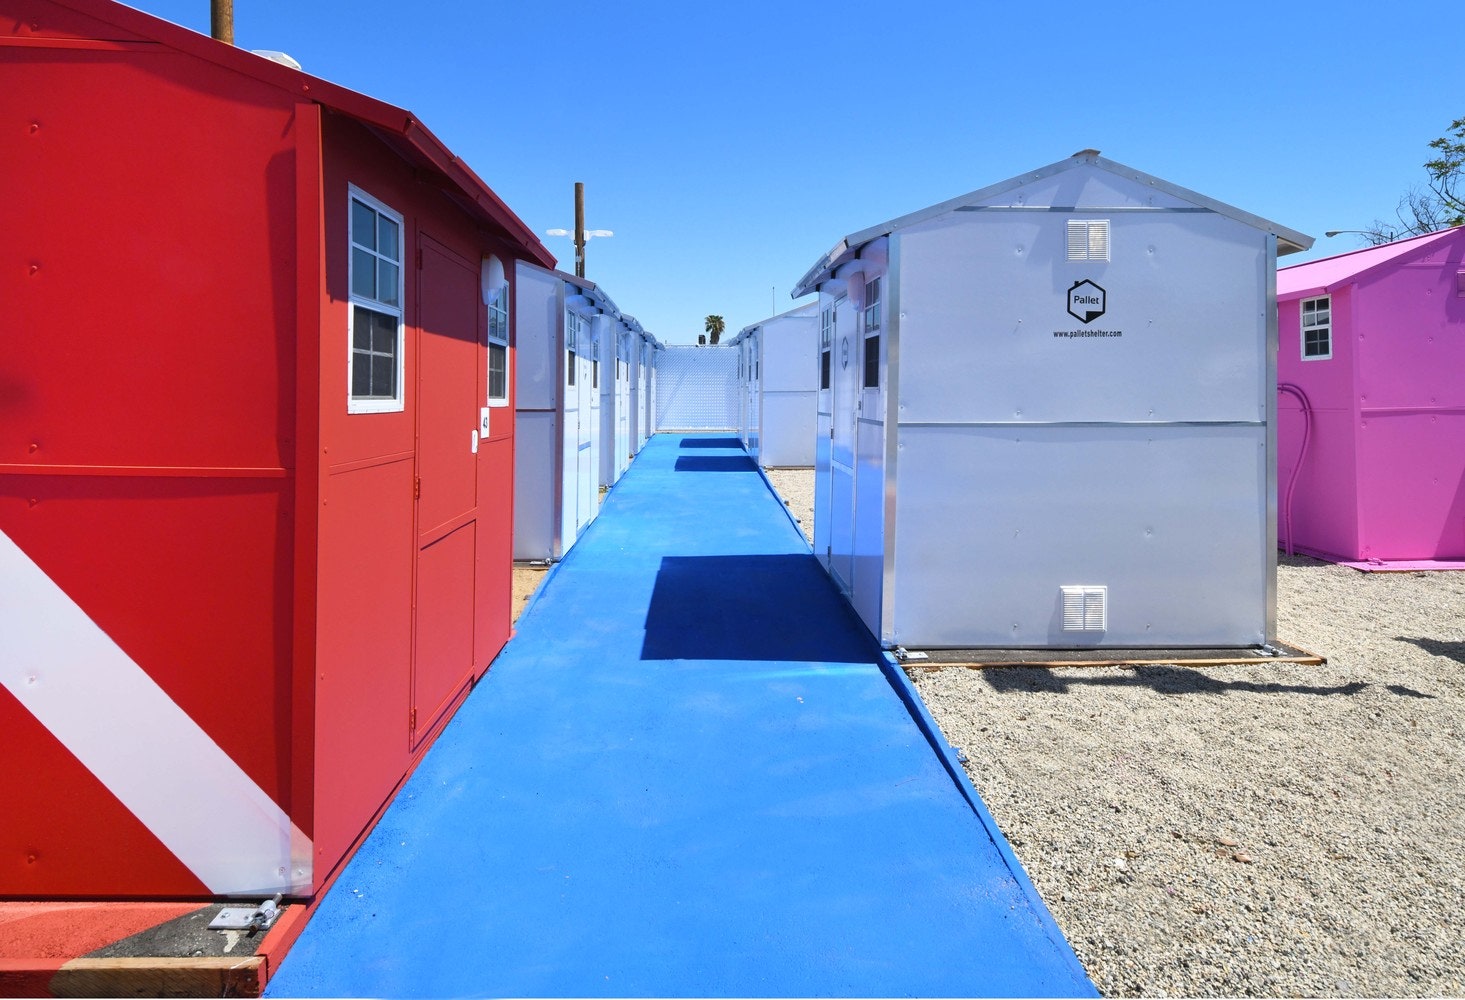 Поселок для бездомных в ЛосАнджелесе по проекту Lehrer Architects